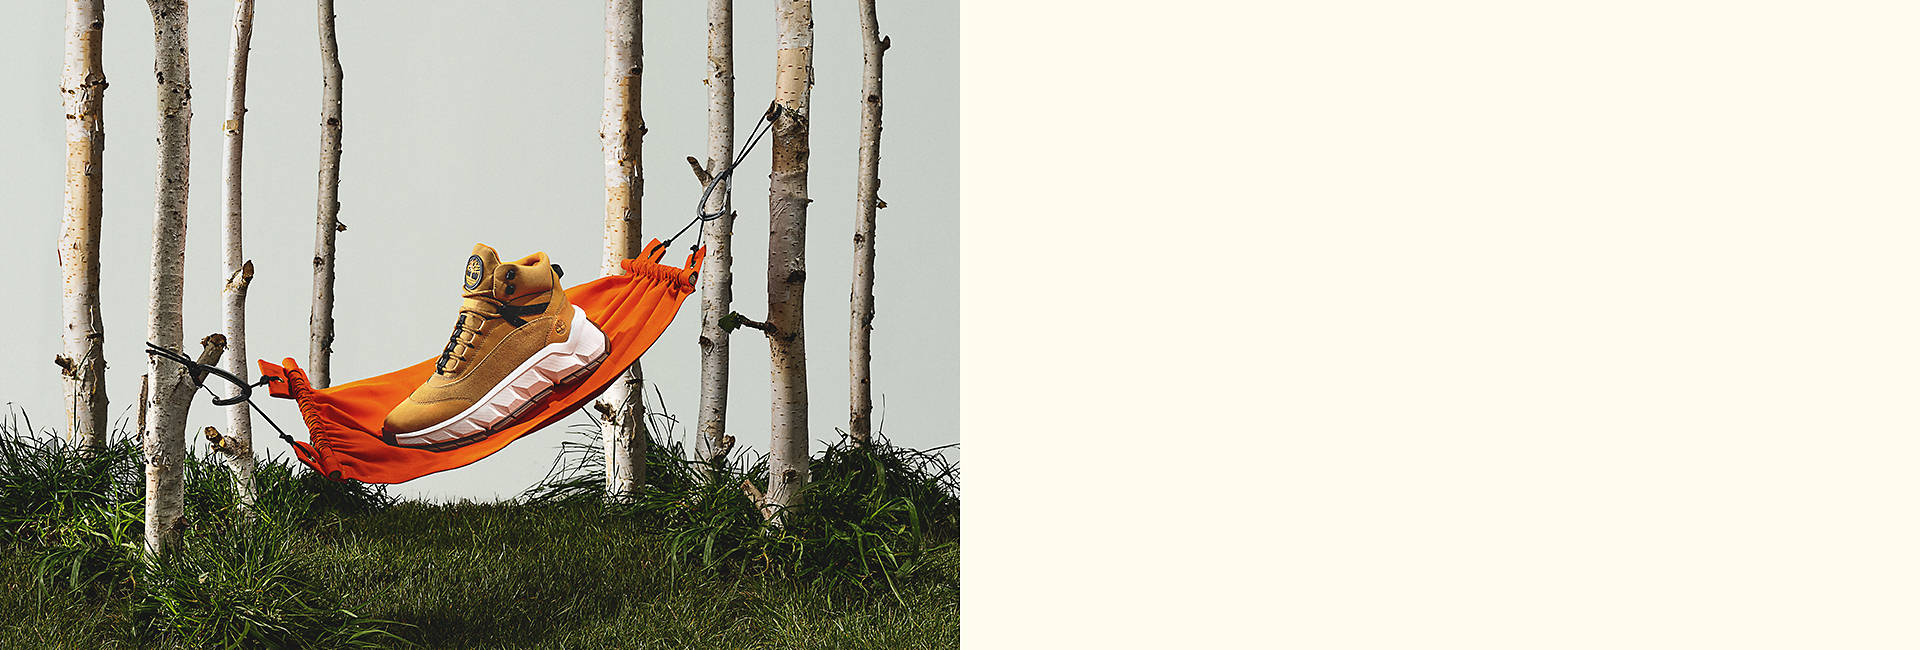 Image d'une botte basse fauve avec une épaisse semelle extérieure blanche, perchée sur un mini hamac orange suspendu entre des branches de bouleau.